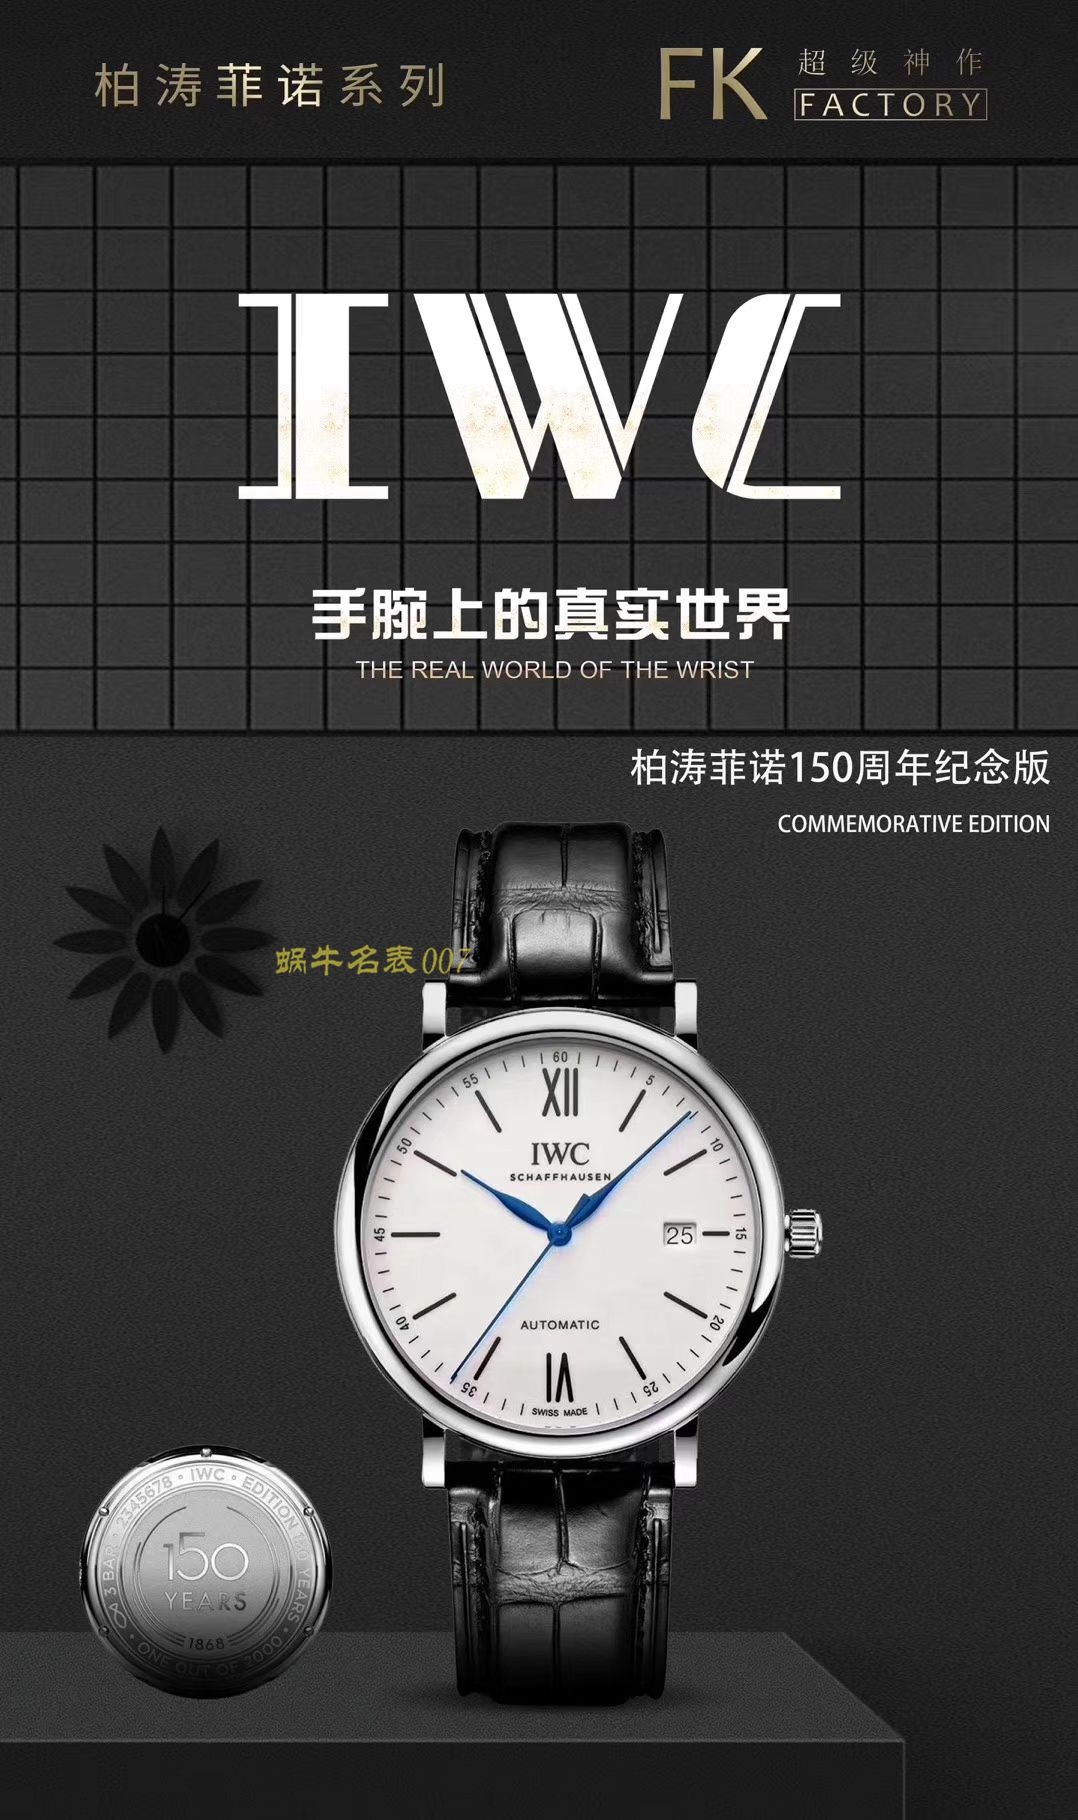 【顶级复刻版手表价格】视频评测IWC万国表柏涛菲诺系列IW356506腕表 / WG358